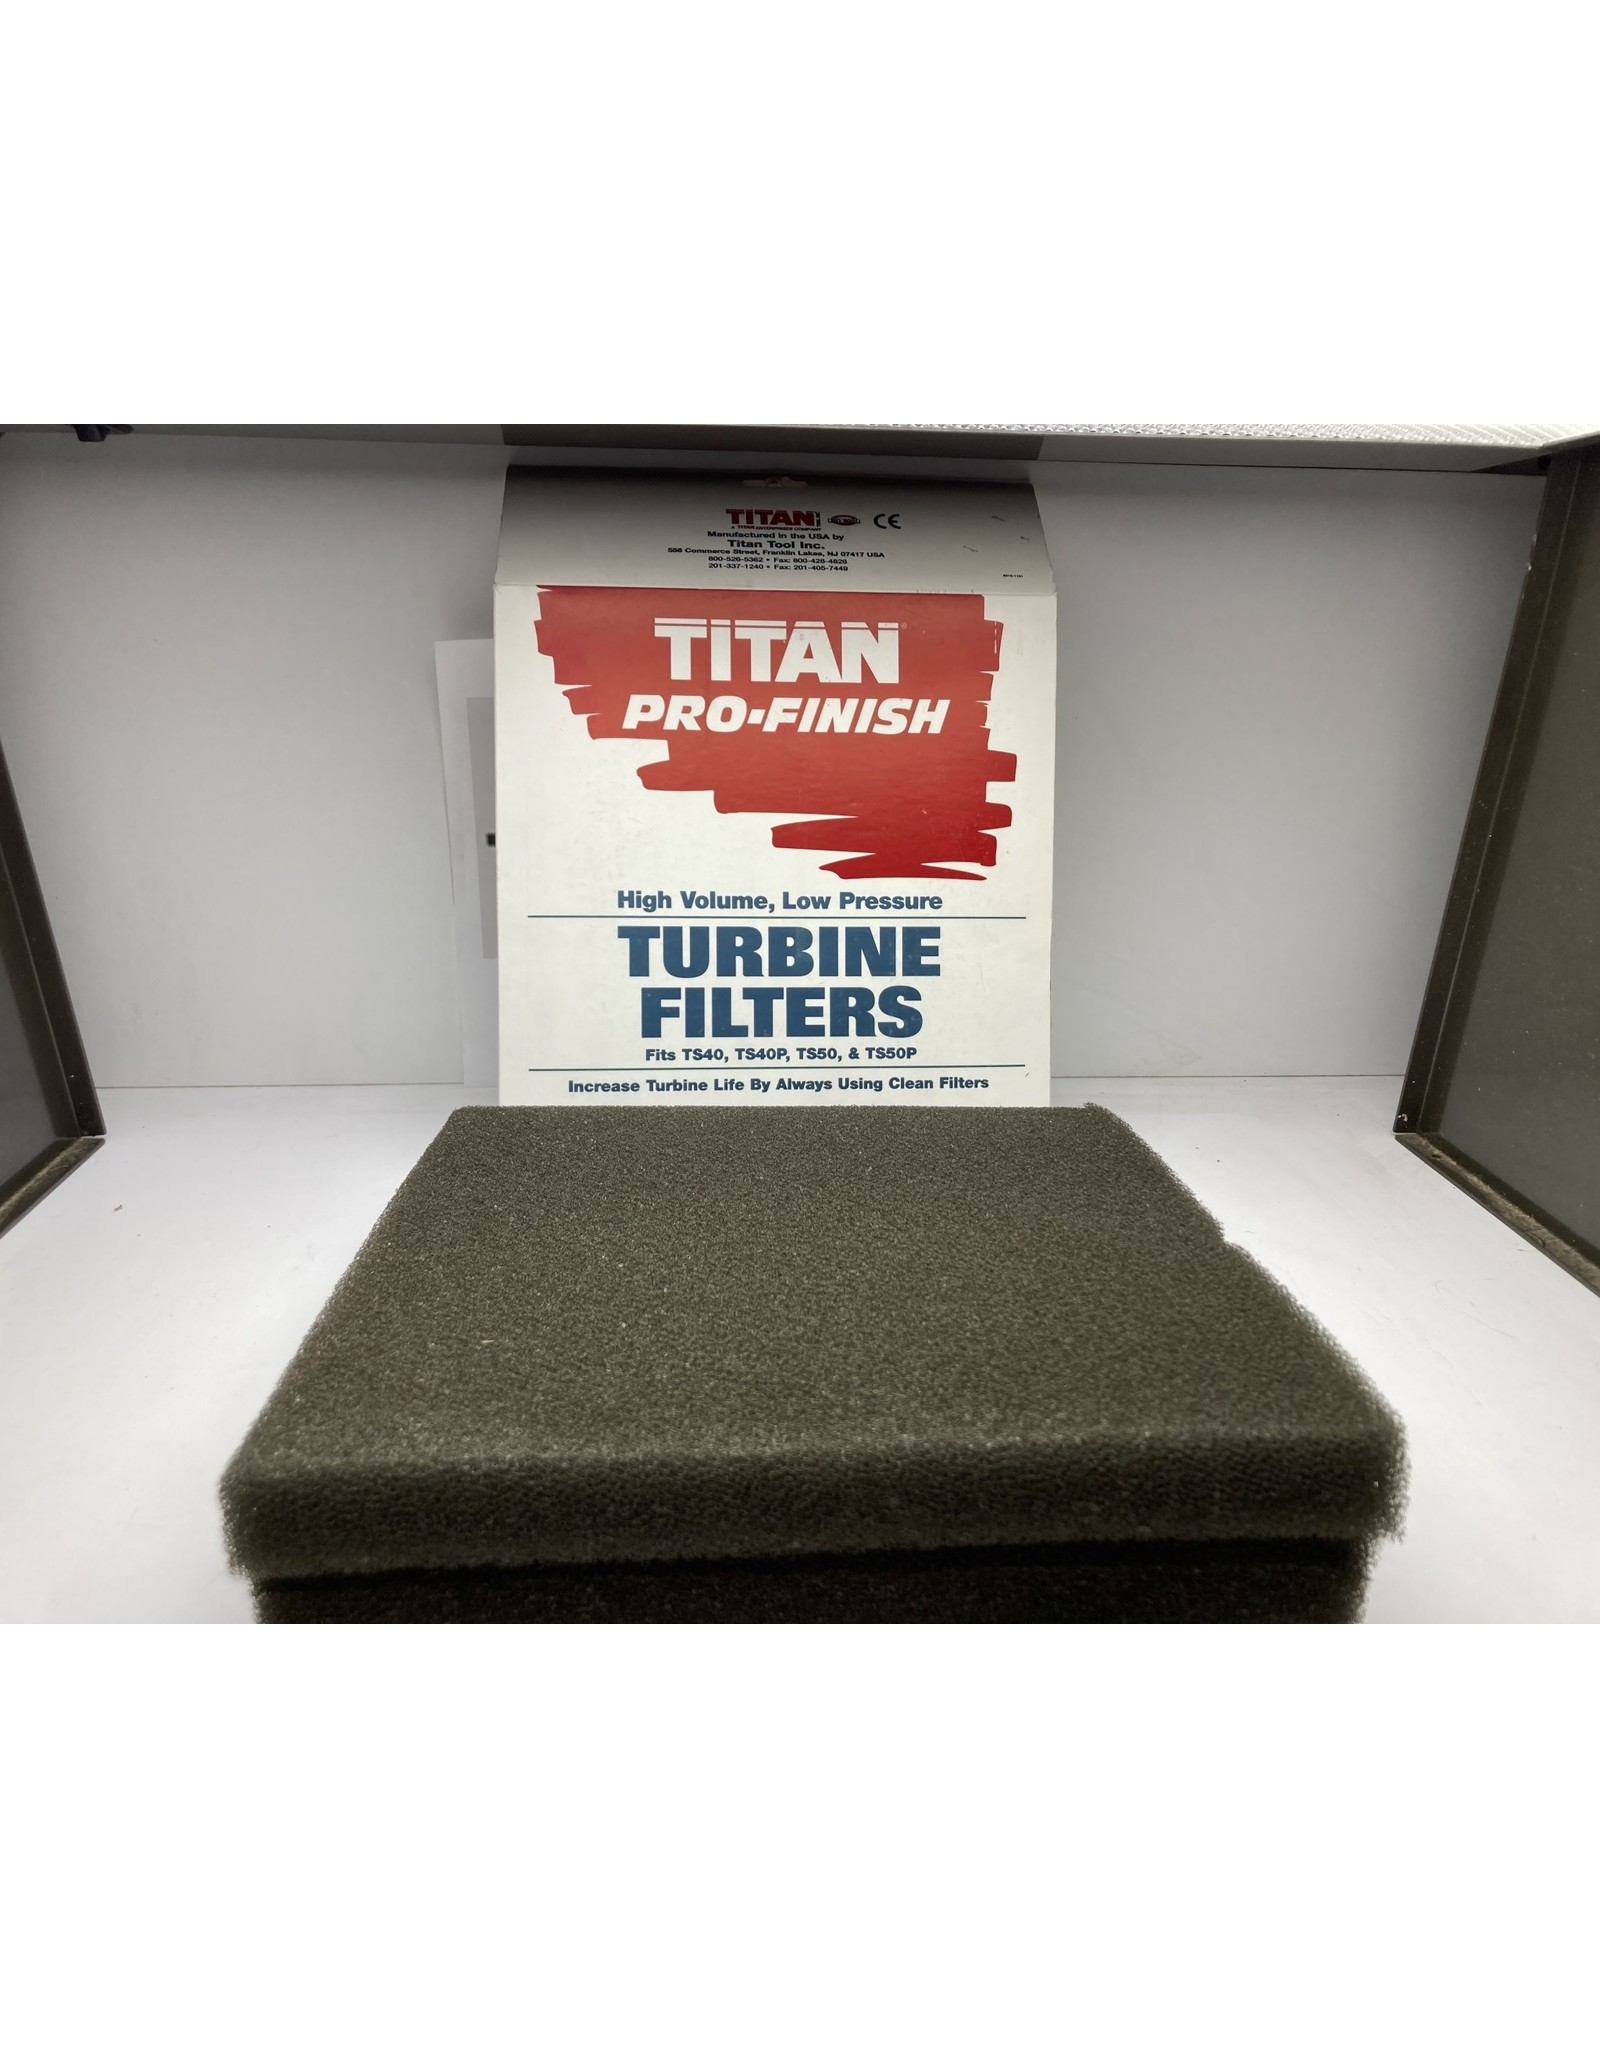 Titan 773-655 Titan Turbine Filters TS40,TS40P, TS50,TS50P